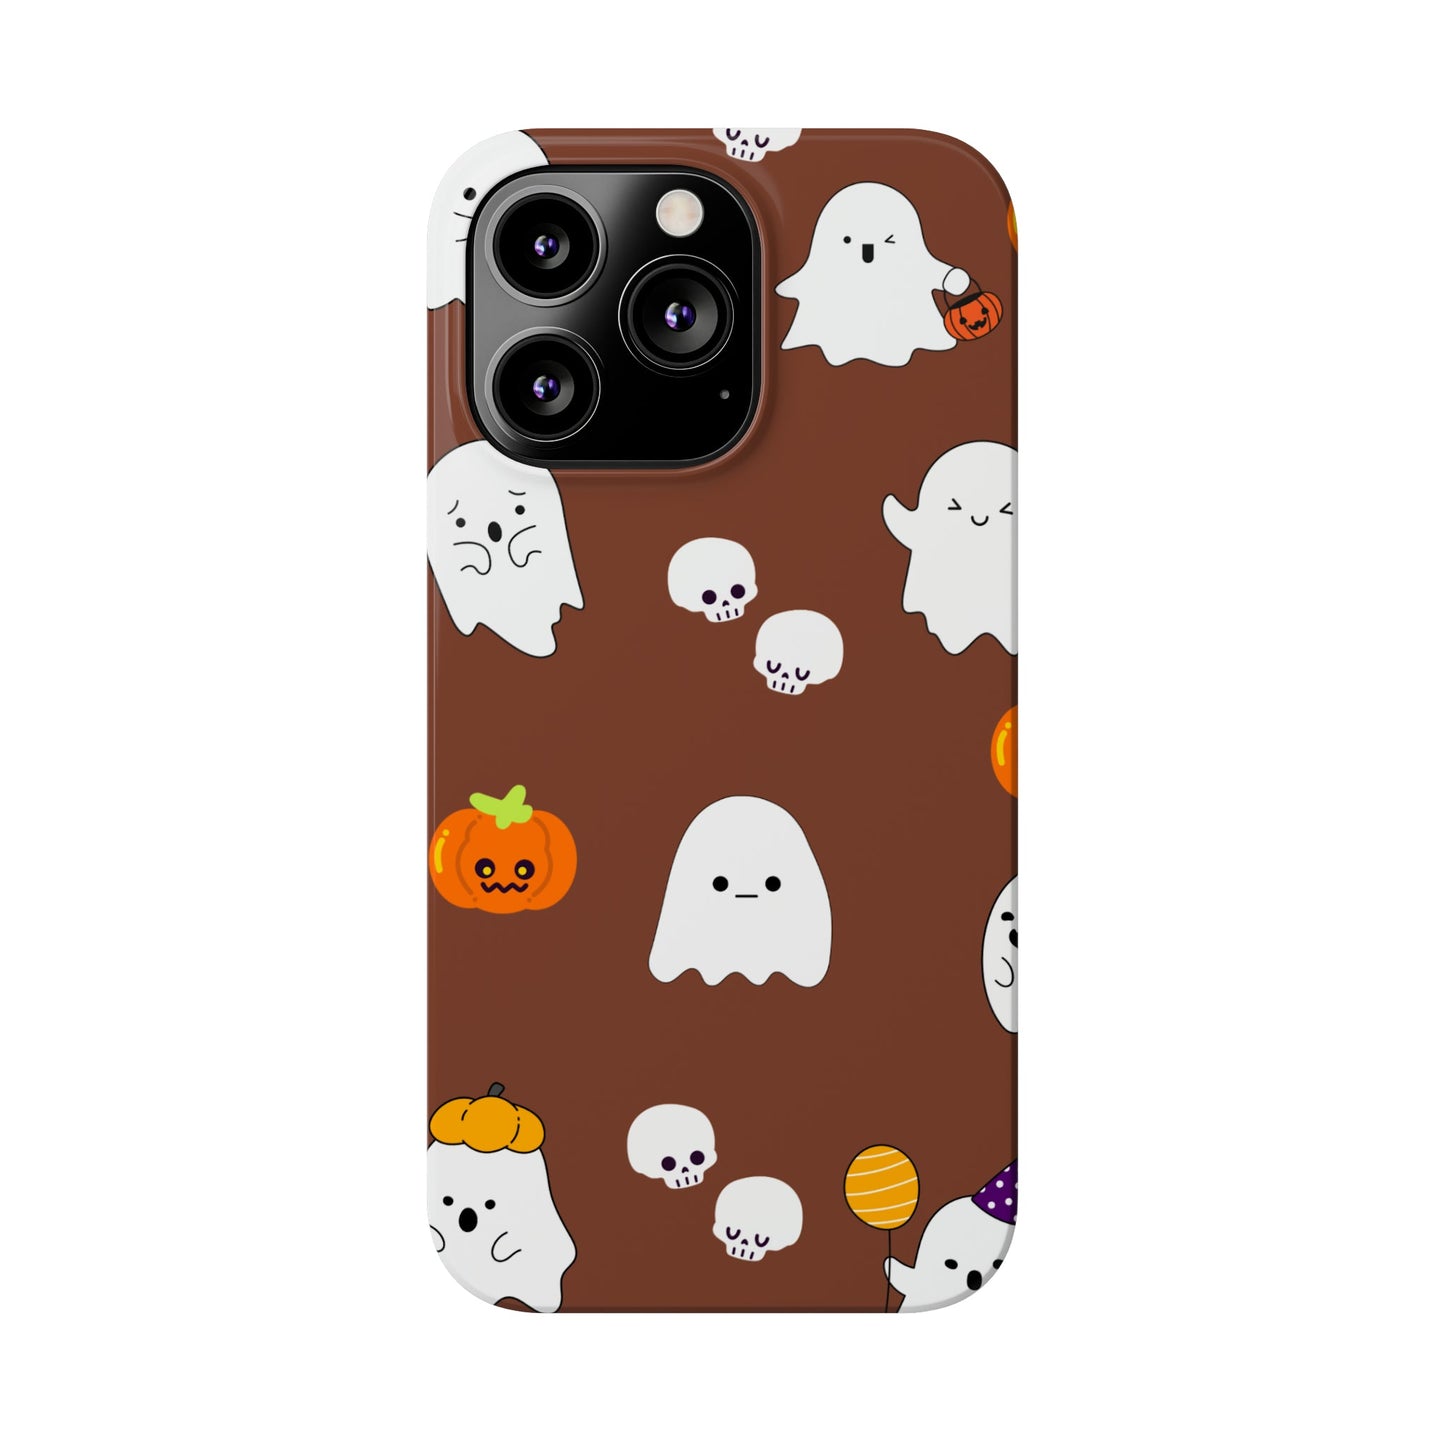 Ghost Slim Phone Cases DesignedbySiti